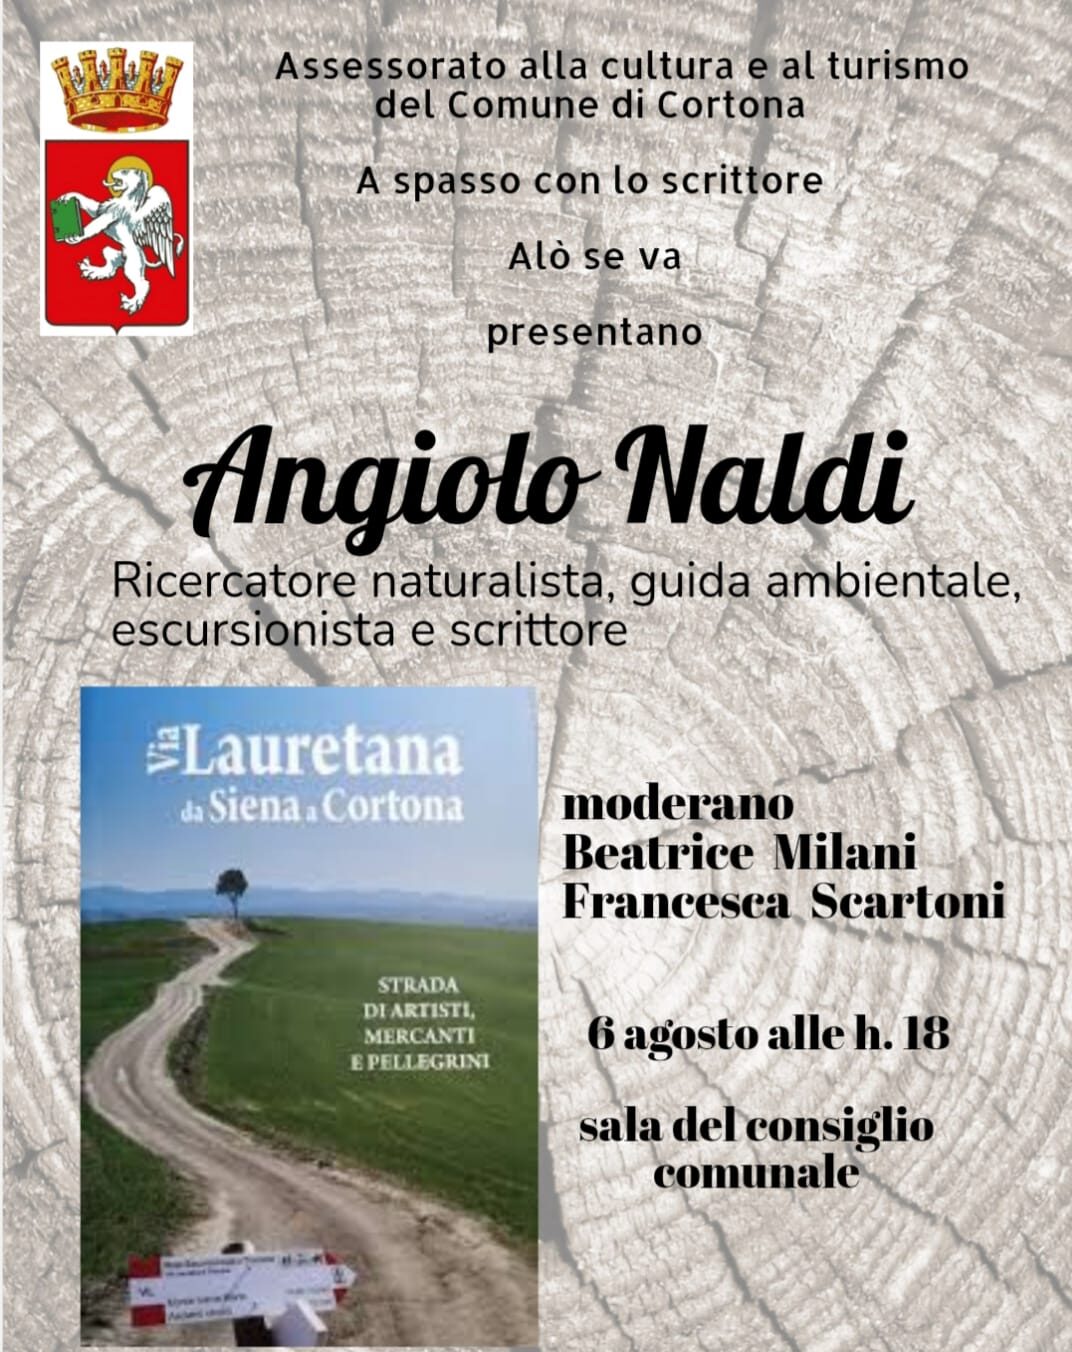 Cortona, «Via Lauretana, da Siena a Cortona»: la presentazione del libro-guida curato da Angiolo Naldi